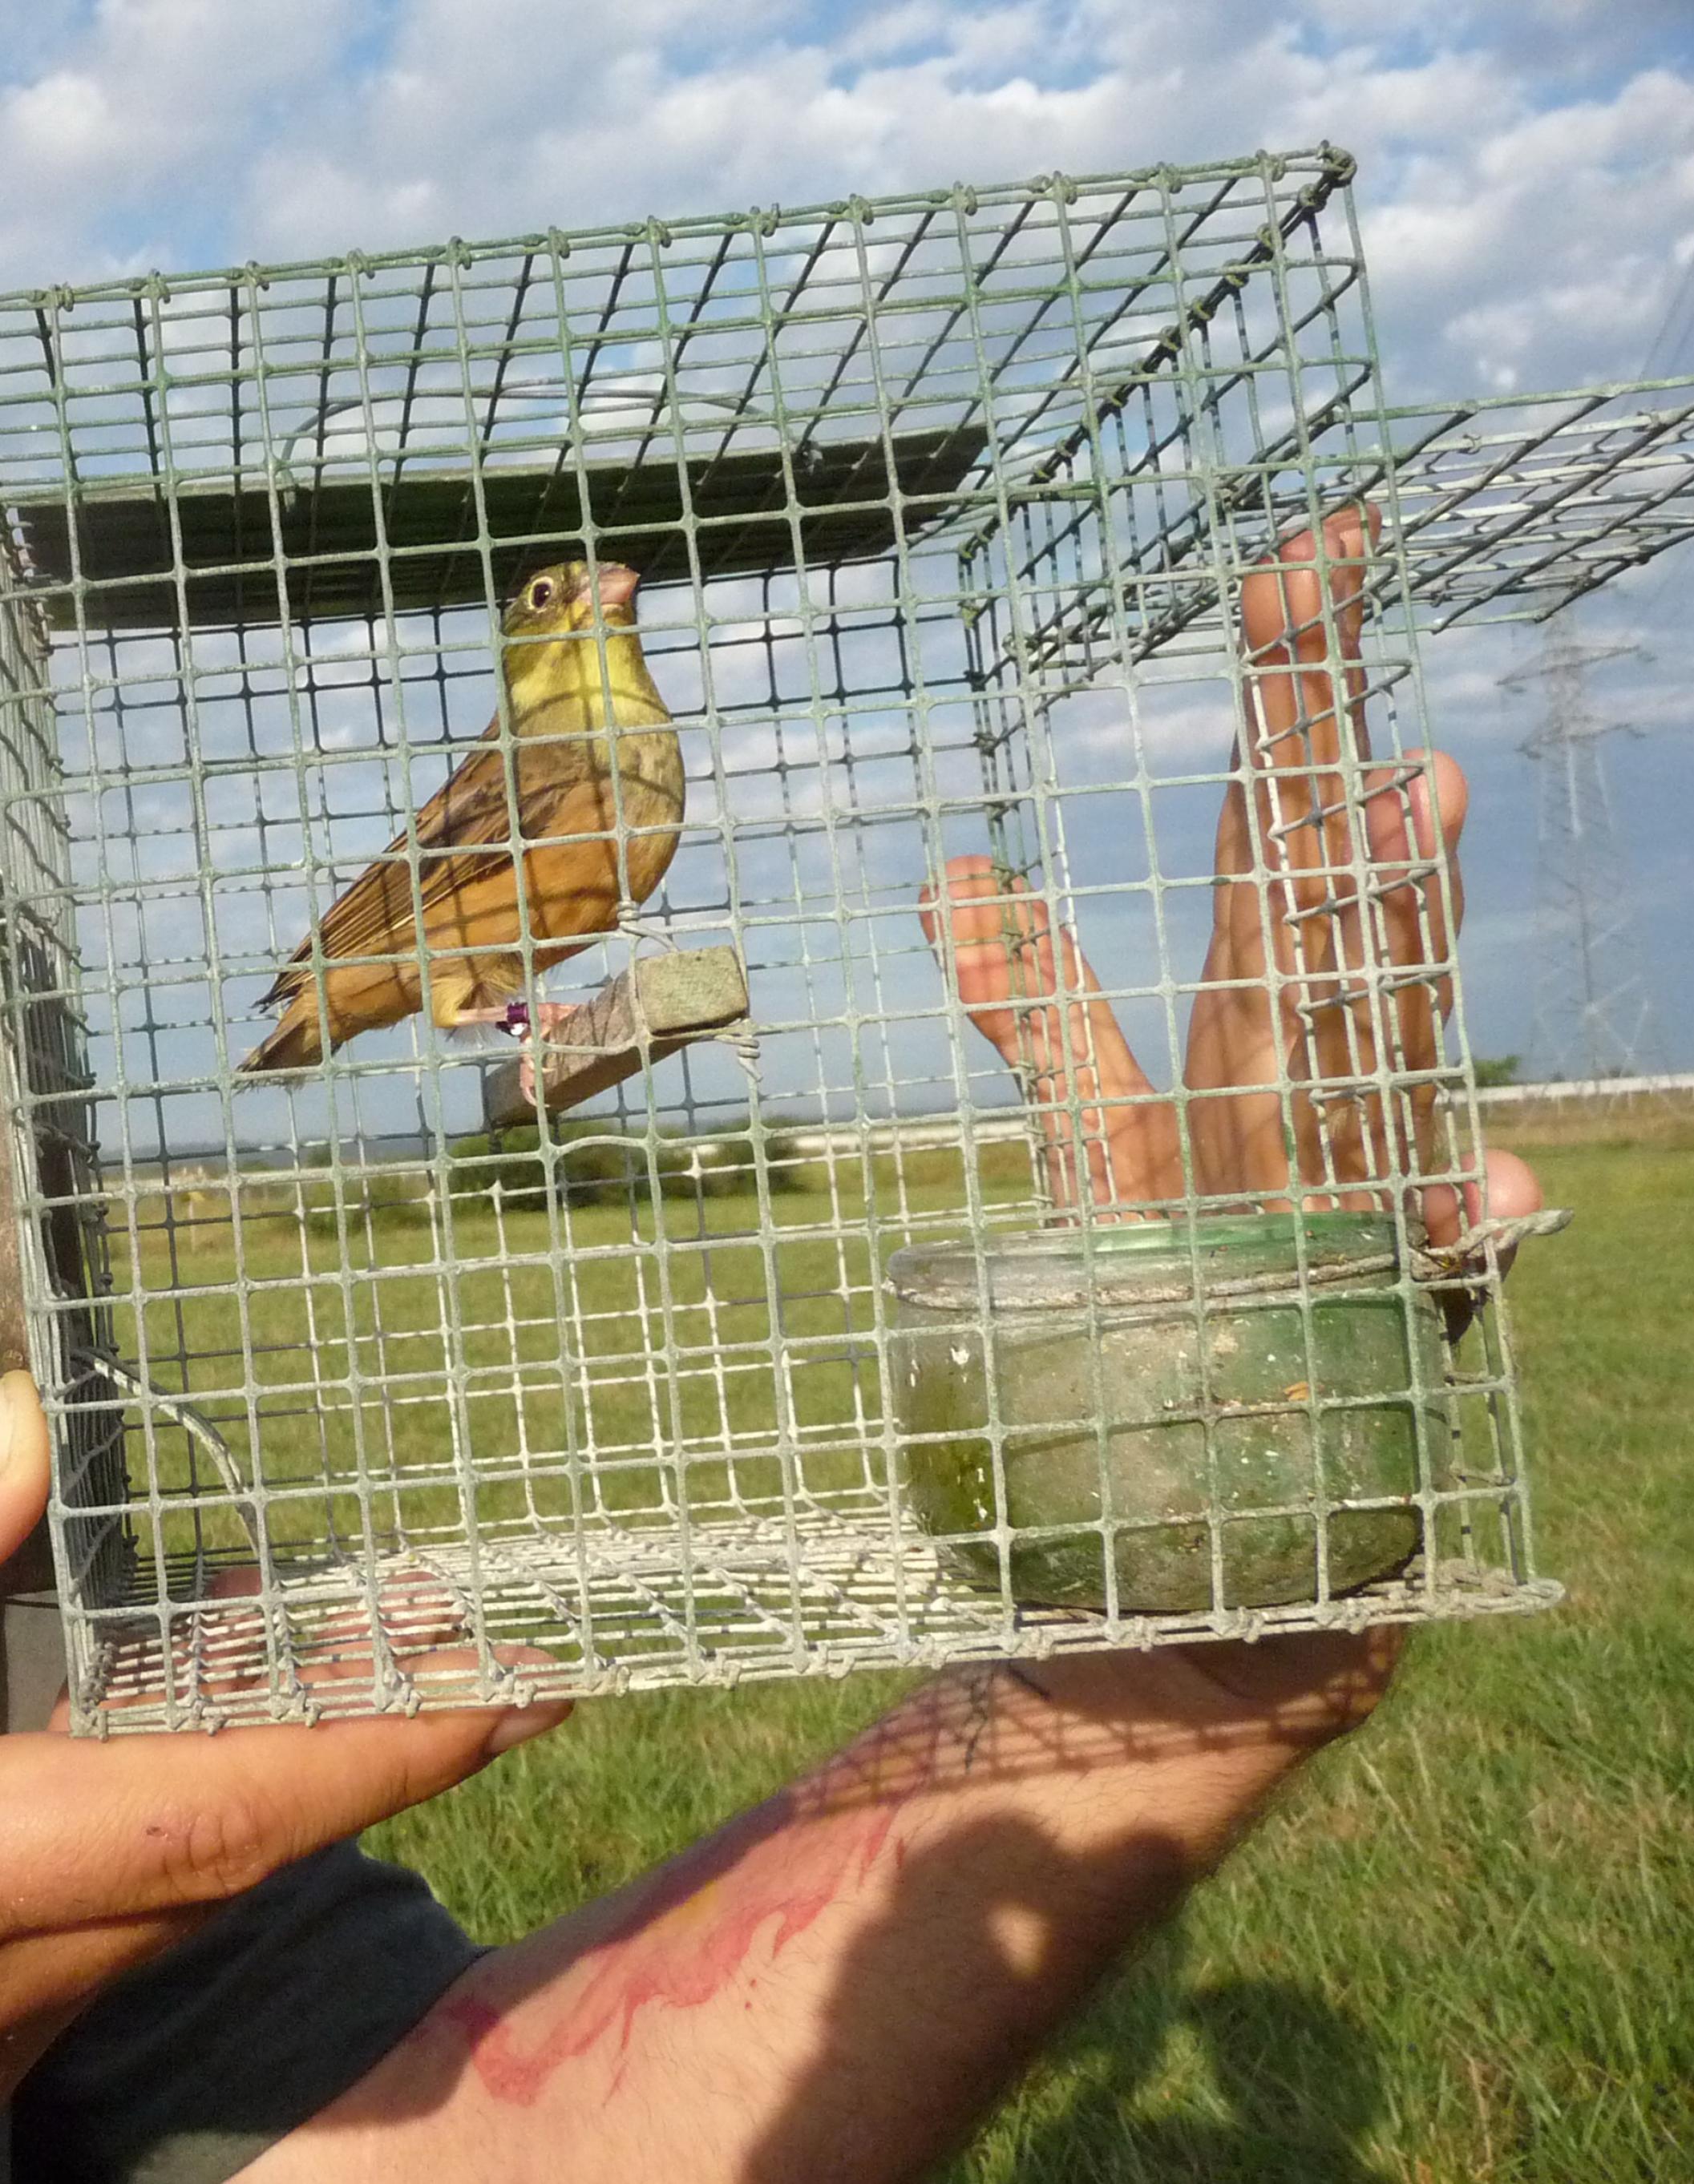 Ein illegal gefangener Ortolan kurz vor seiner Freilassung durch einen Vogelschützer.